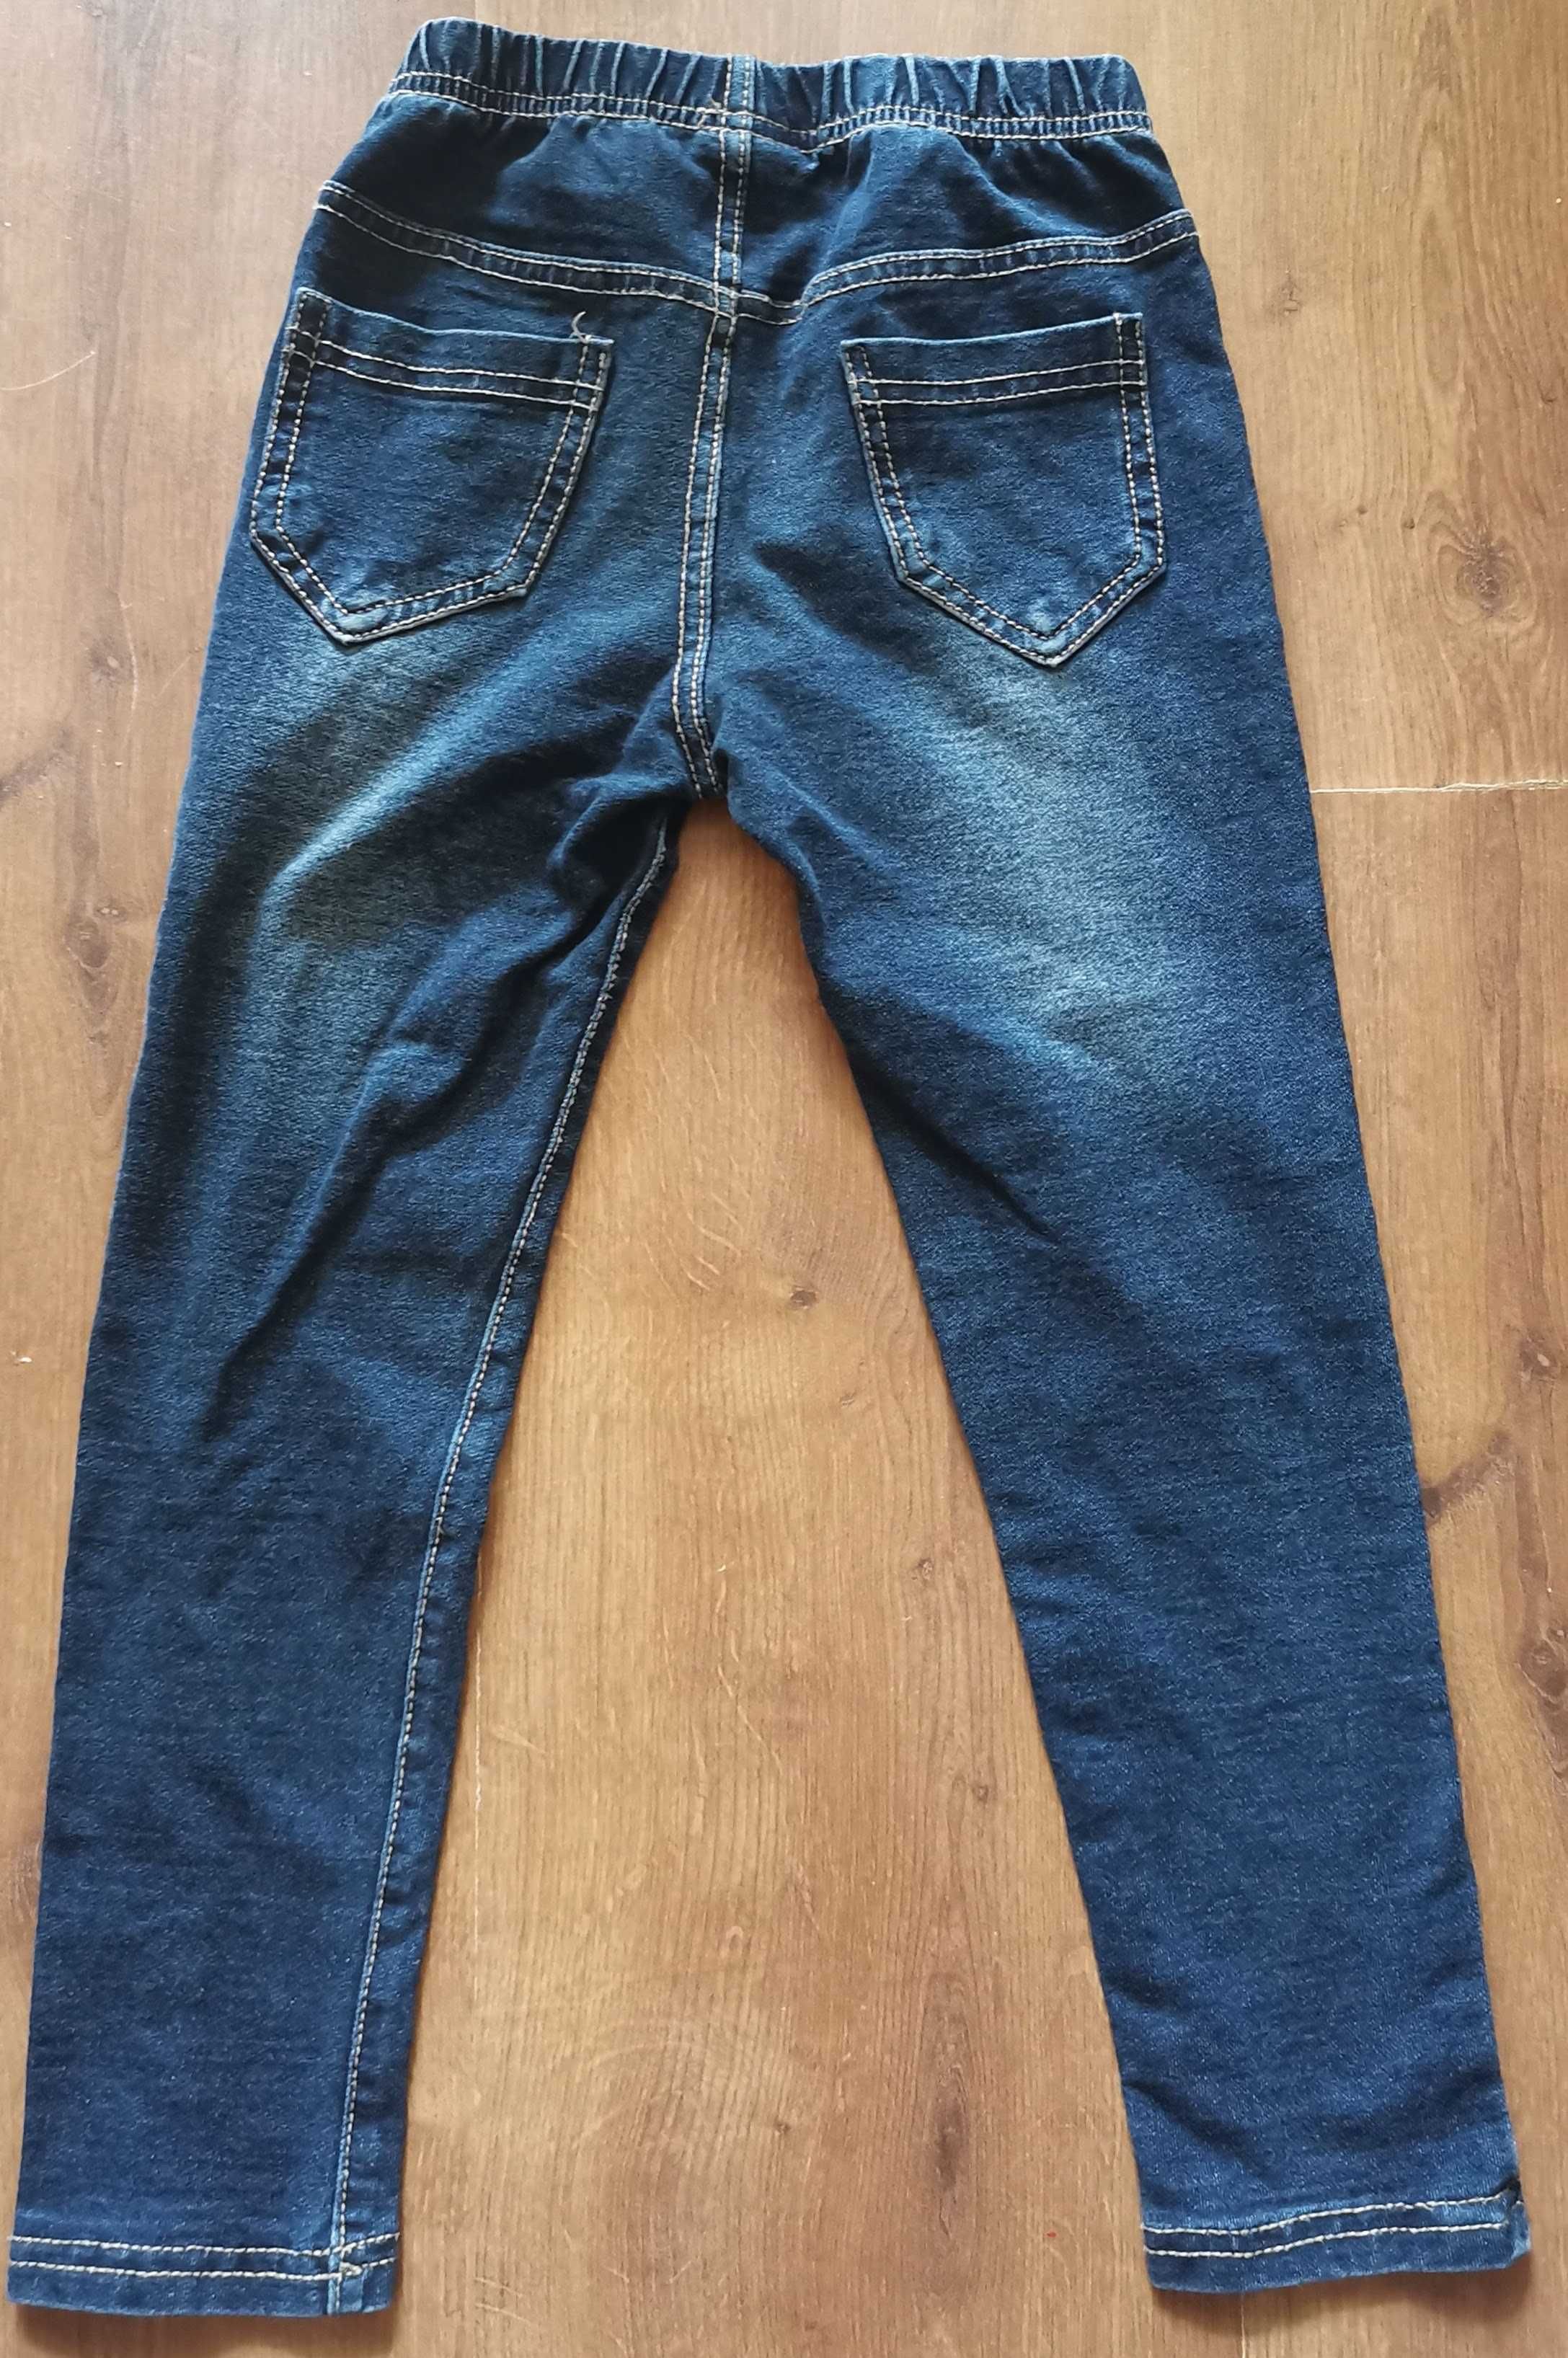 Leginsy miękki jeans spodnie ala jeans 110